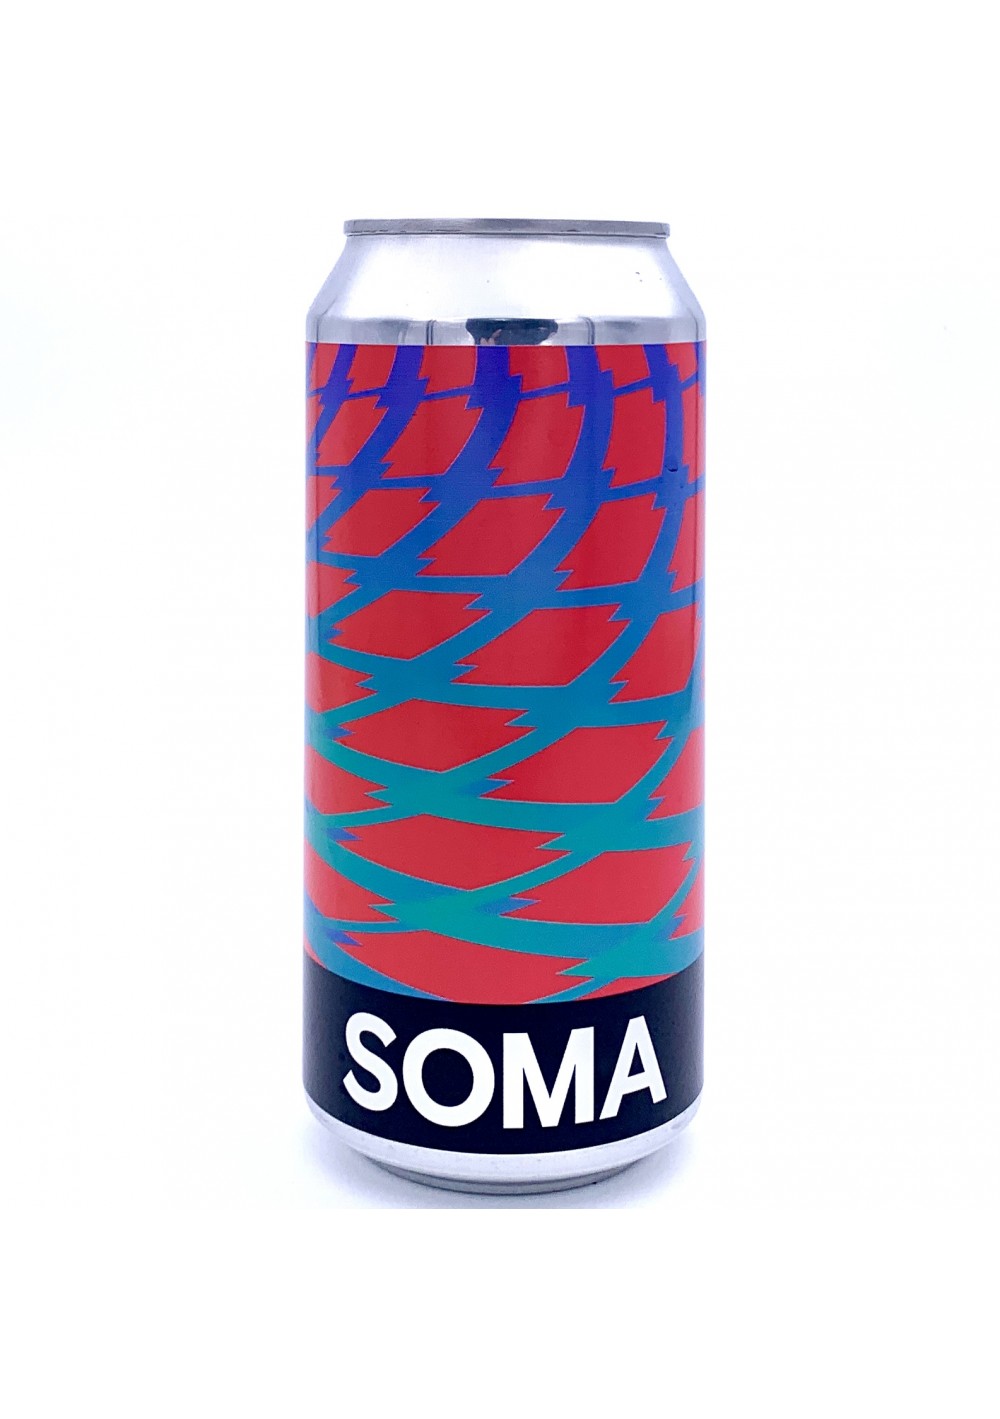 SOMA - Ice Breaker - New England IPA